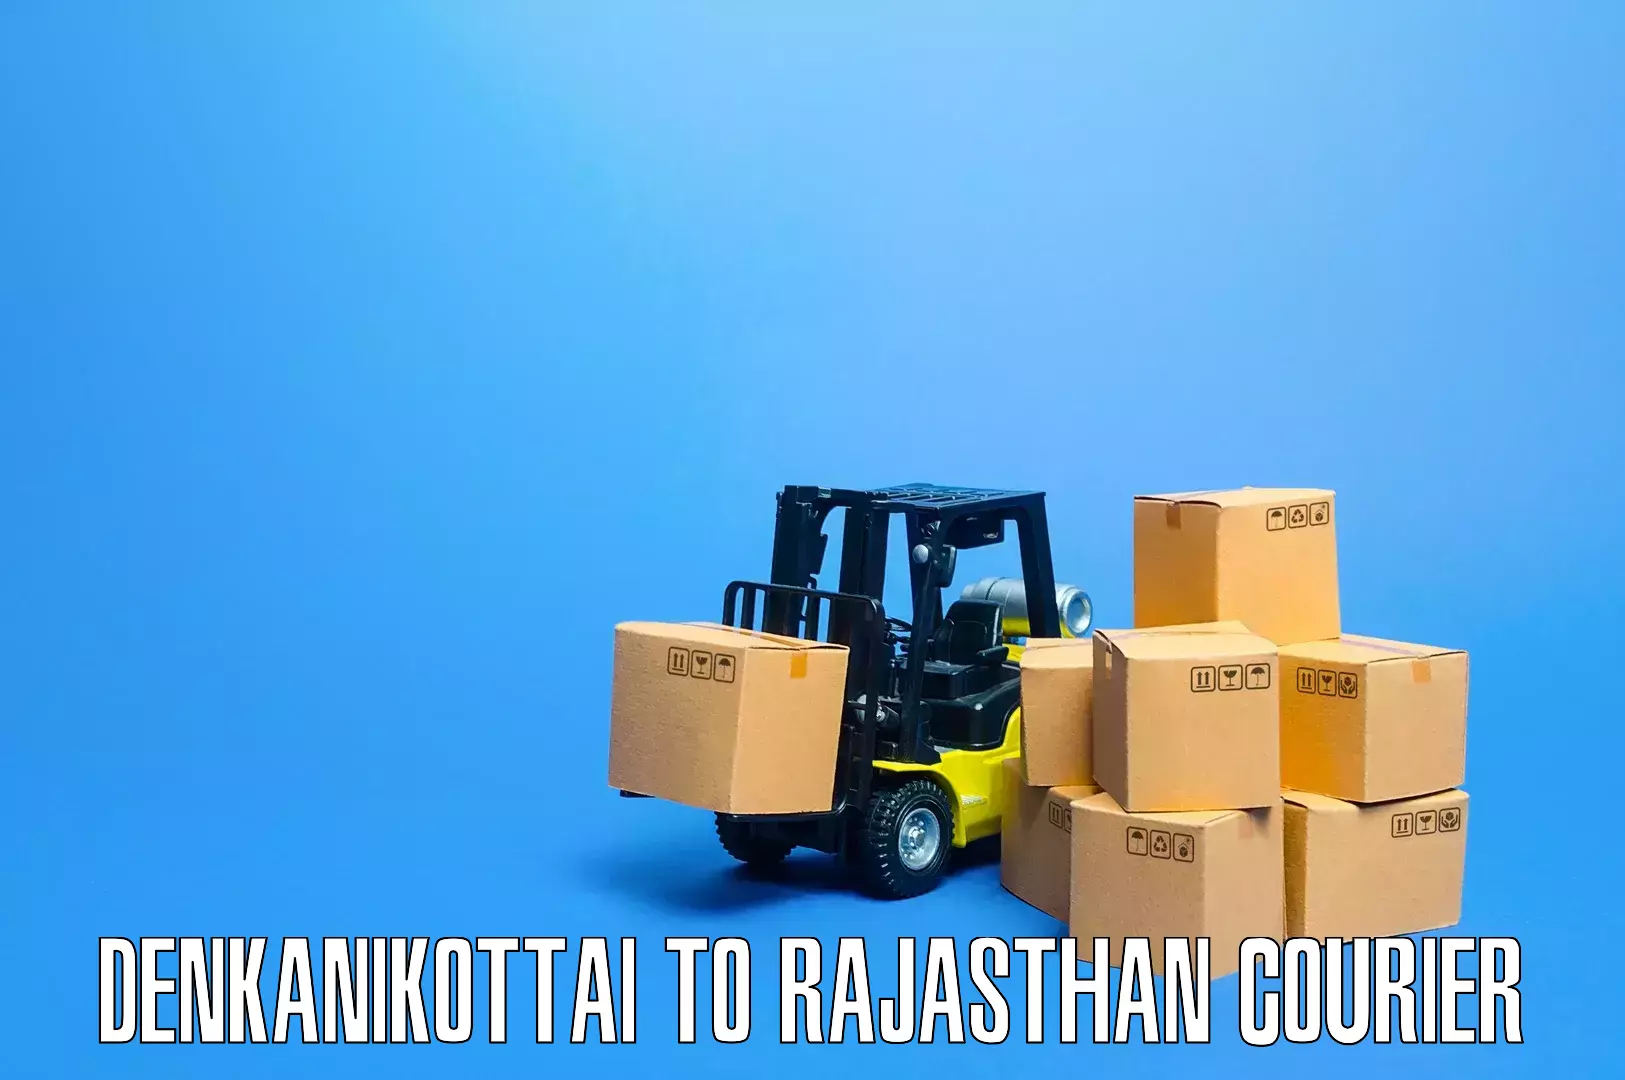 Specialized household transport Denkanikottai to Malpura